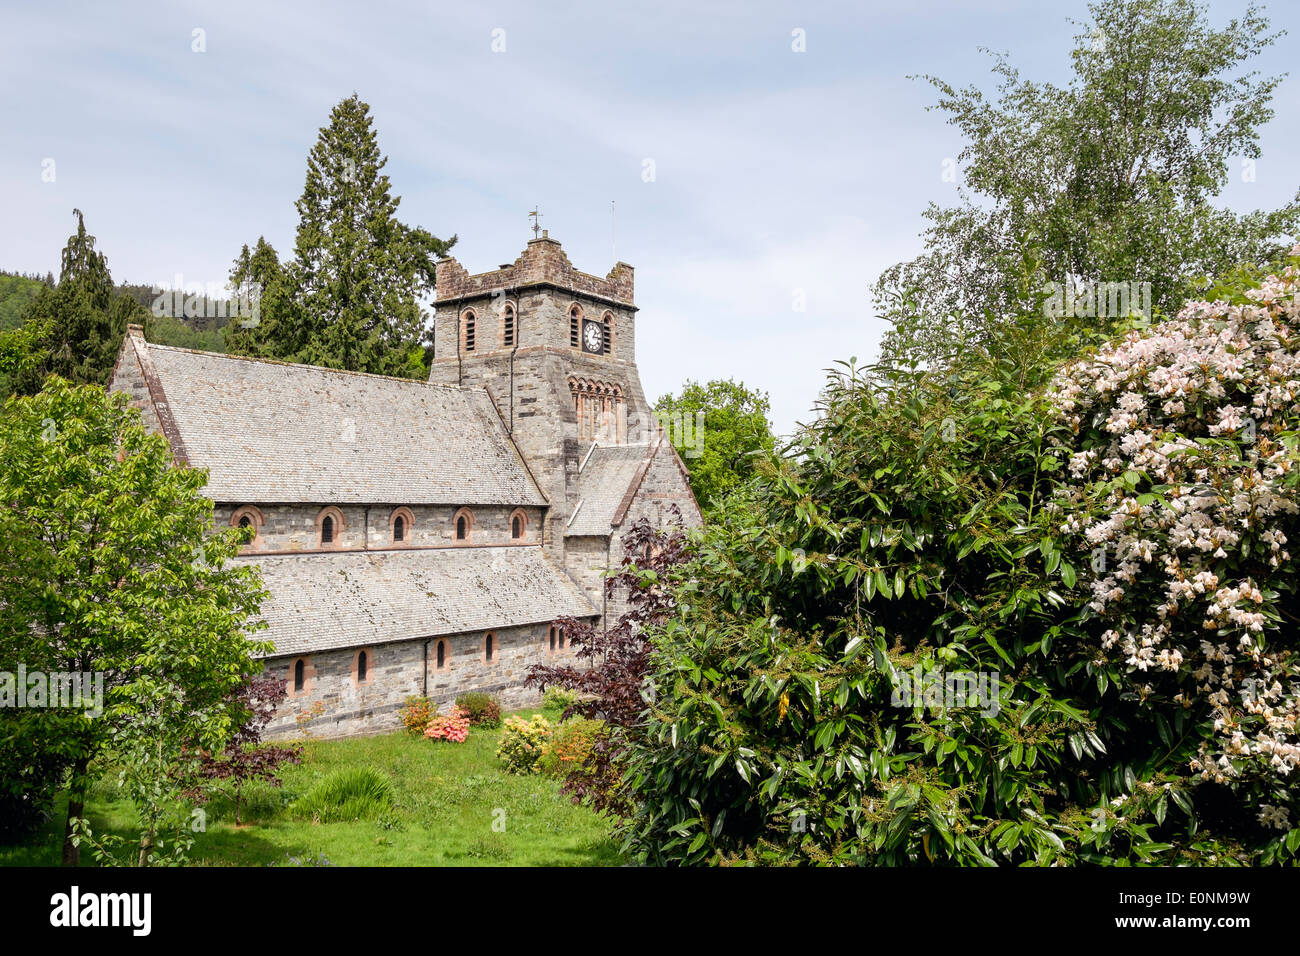 St Mary's Parish Church en 1873 vallée de Conwy village en été dans le parc national de Snowdonia, Betws-Y-coed, au nord du Pays de Galles, Royaume-Uni, Angleterre Banque D'Images